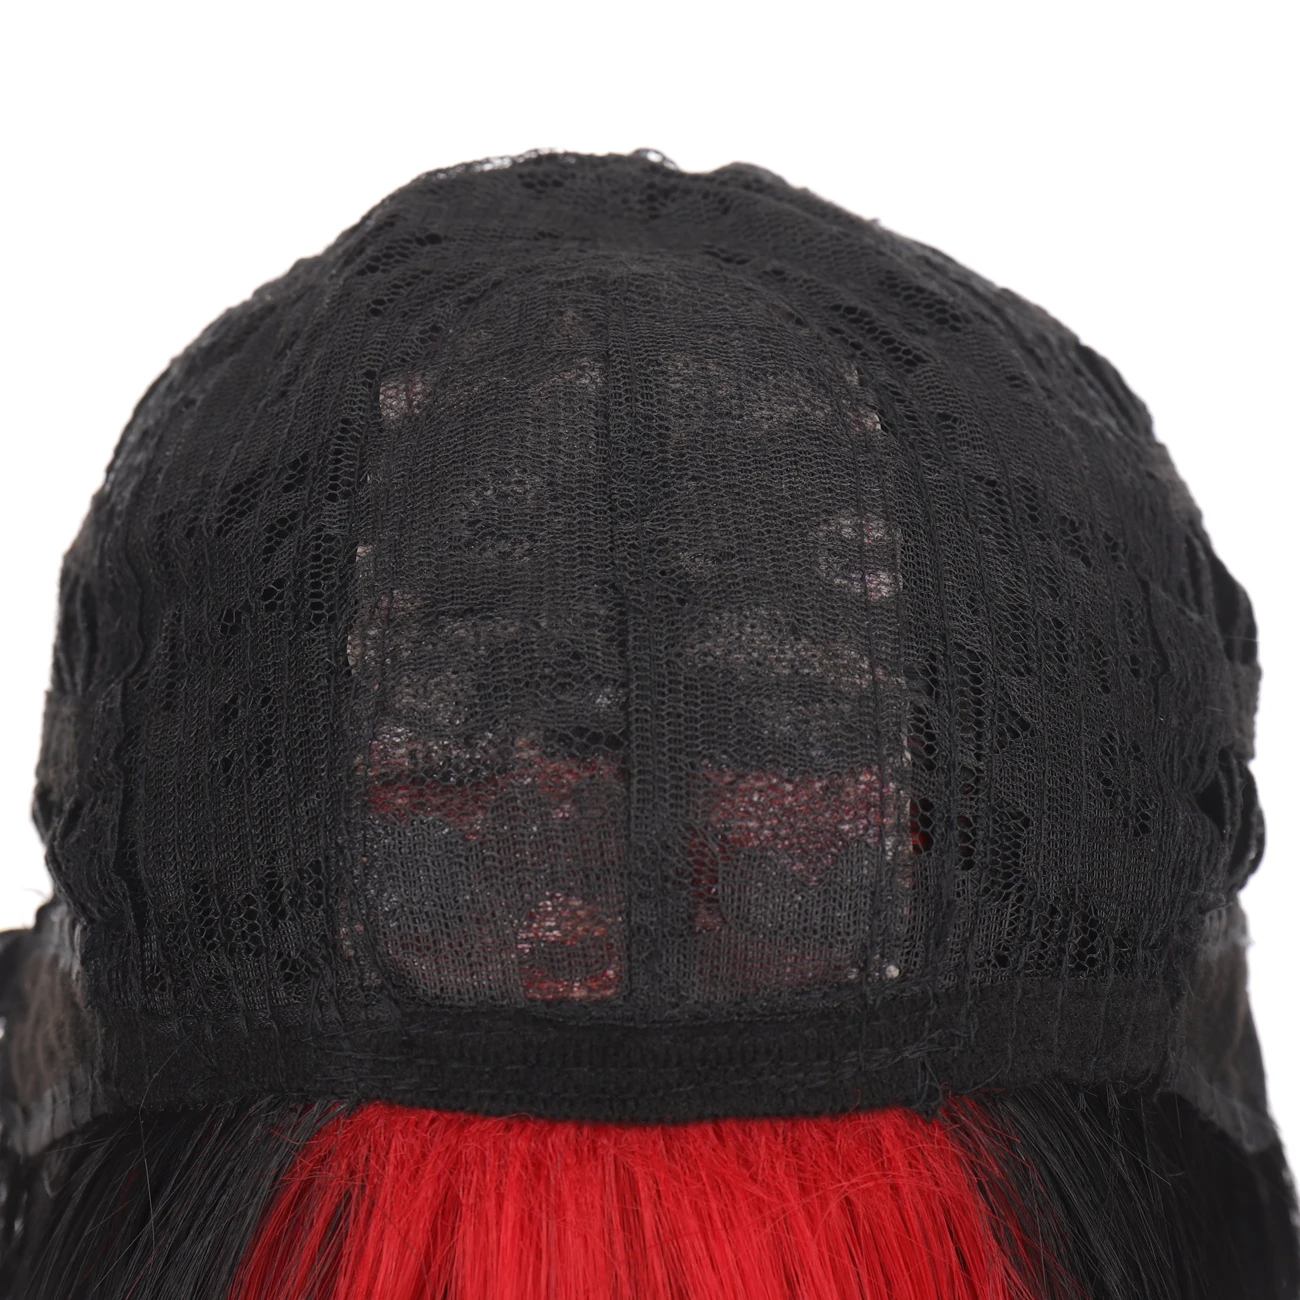 Парик AOOSOO длинные прямые волосы прическа боб с челкой черный красной подсветкой